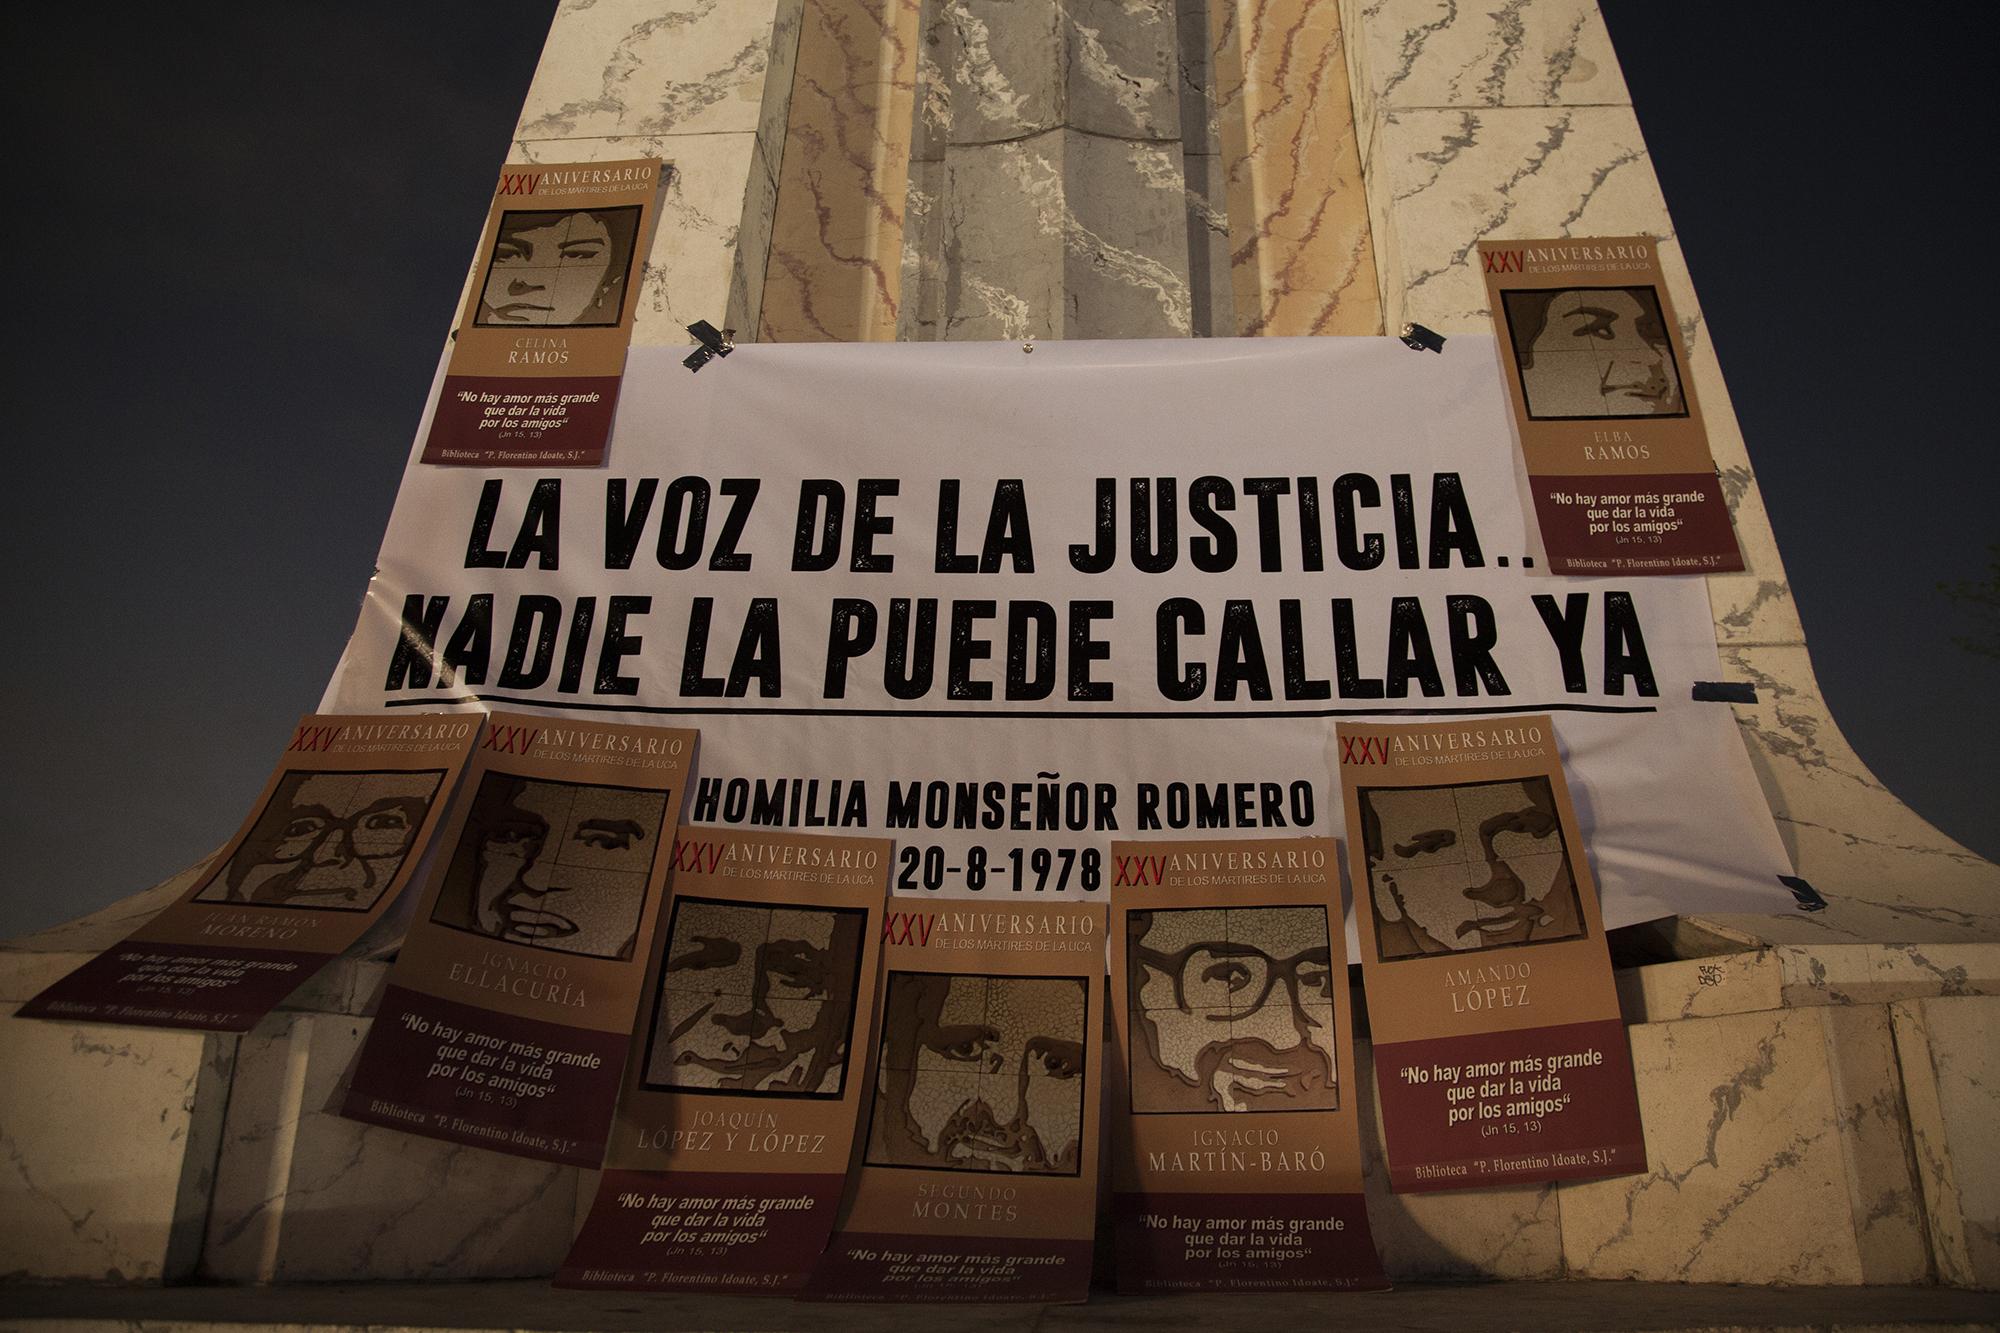 Protesta, del 15 de marzo de 2016, para exigir justicia por el crimen de los sacerdotes jesuitas. Asesinatos realizados el 16 de noviembre de 1989, en la Universidad Centroamericana José Simeón Cañas. Foto de El Faro, por Víctor Peña.